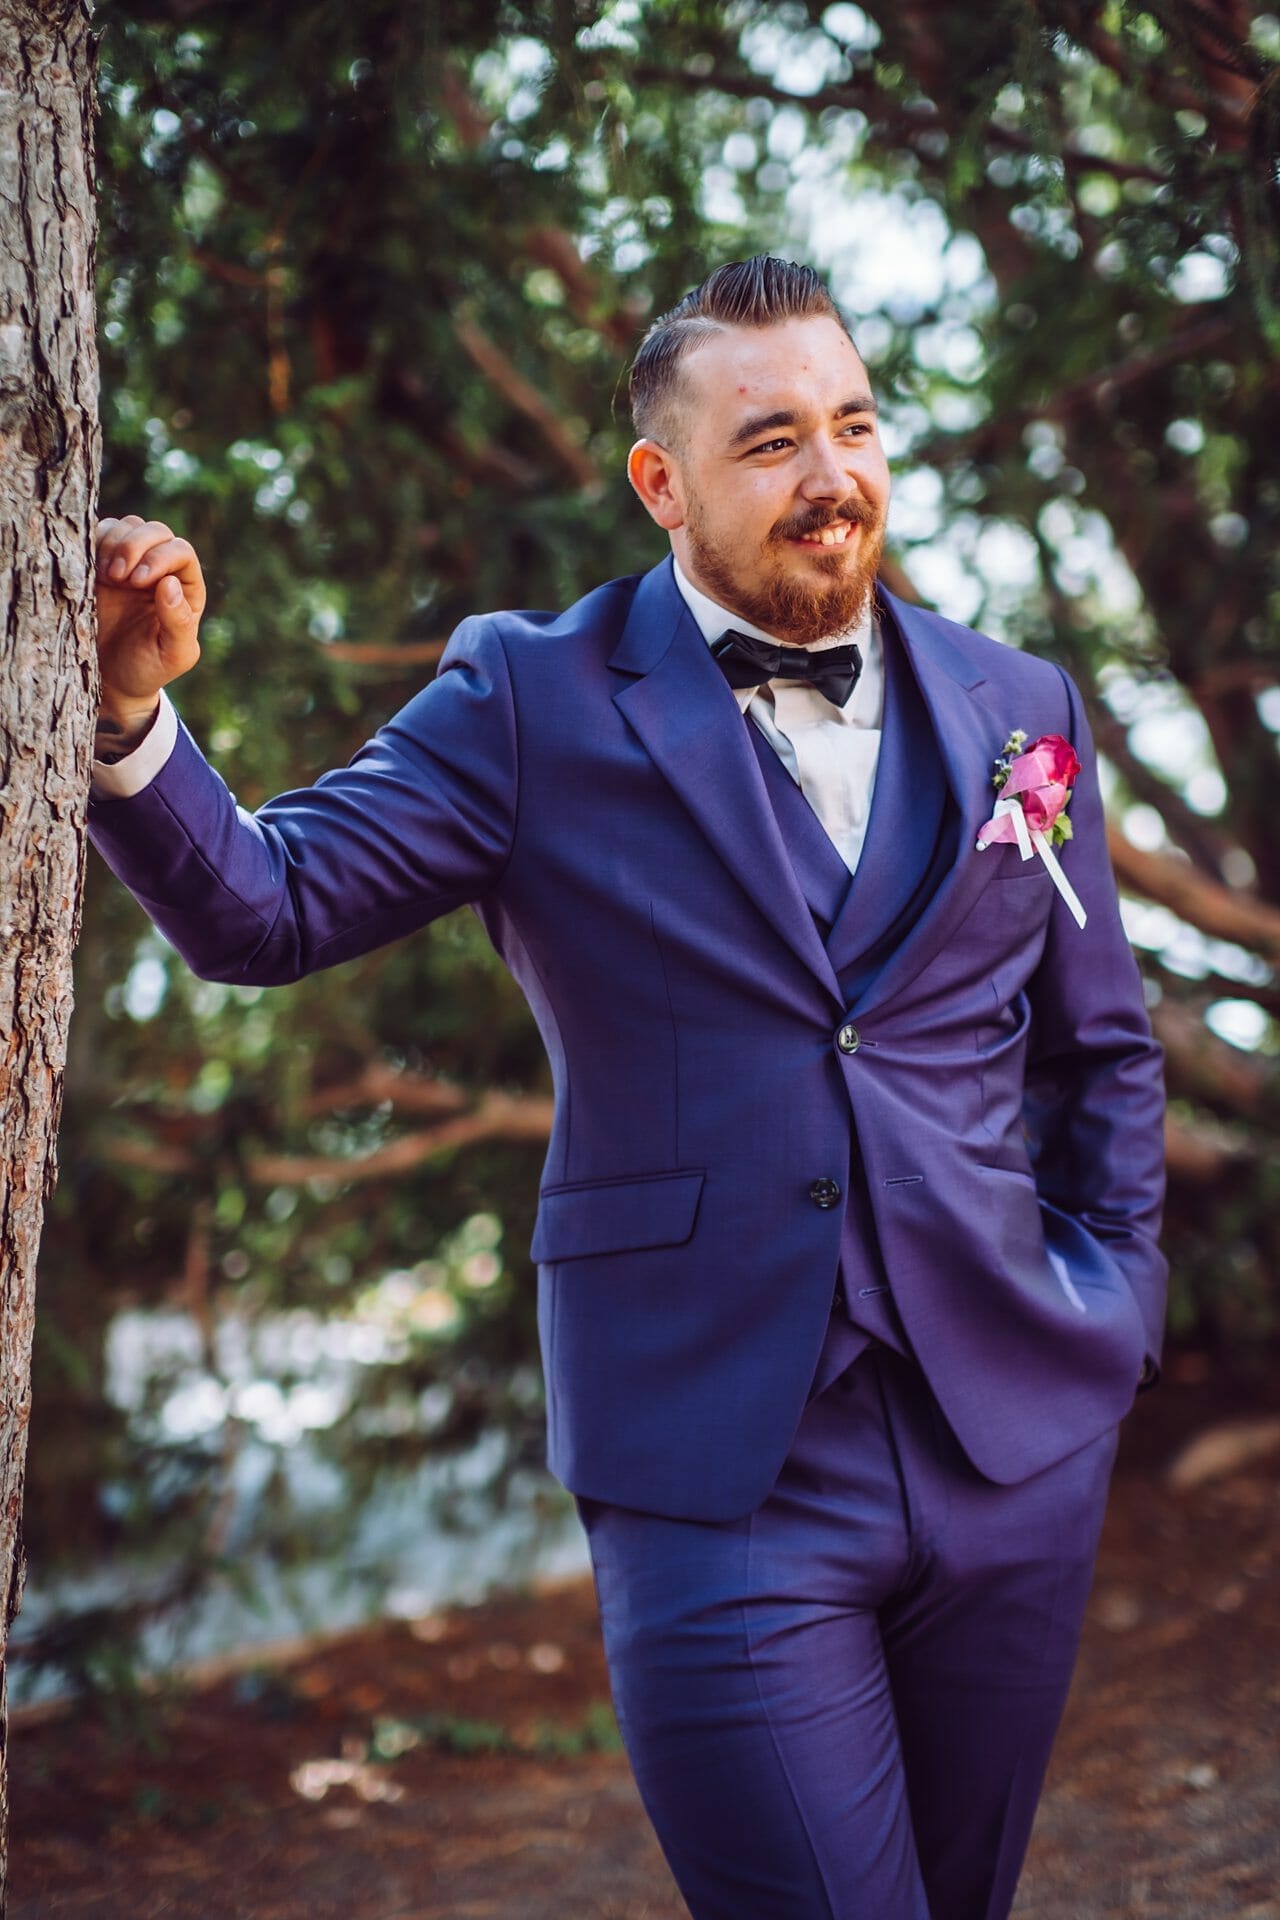 Ein Bräutigam im blauen Anzug lehnt an einem Baum.